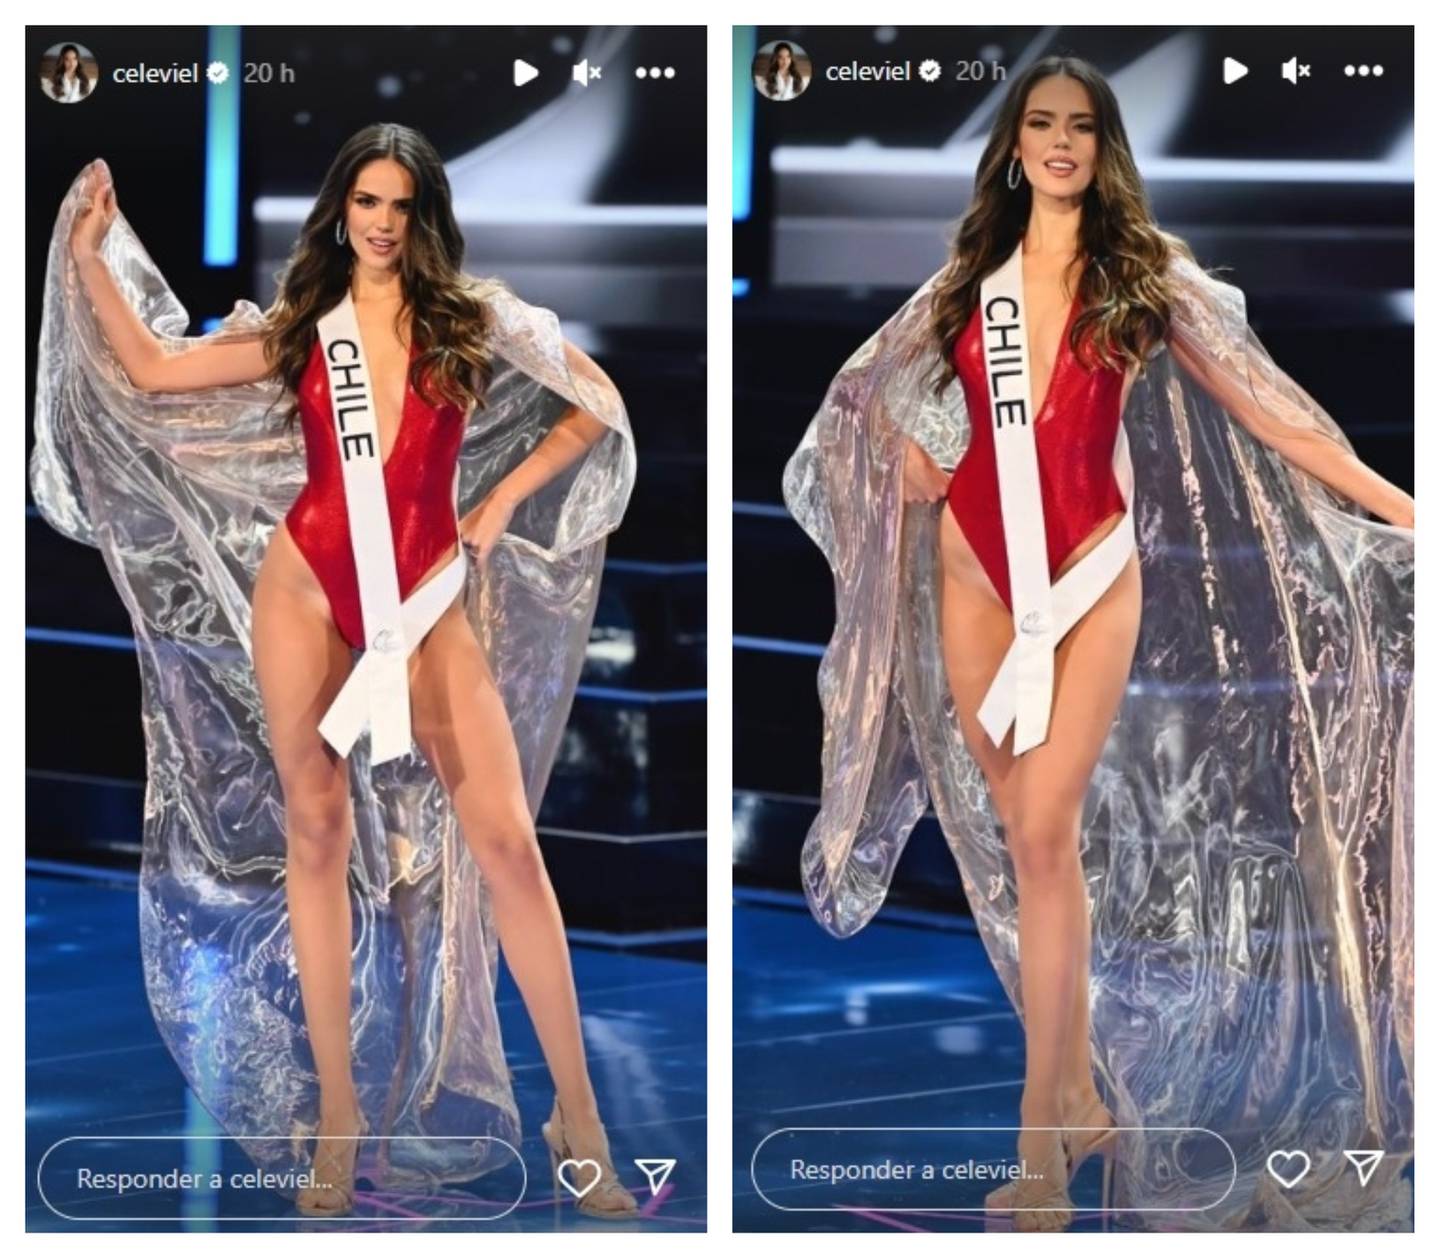 La candidata nacional fue muy bien evaluada por su pasarela de anoche en traje de baño en el concurso Miss Universo.